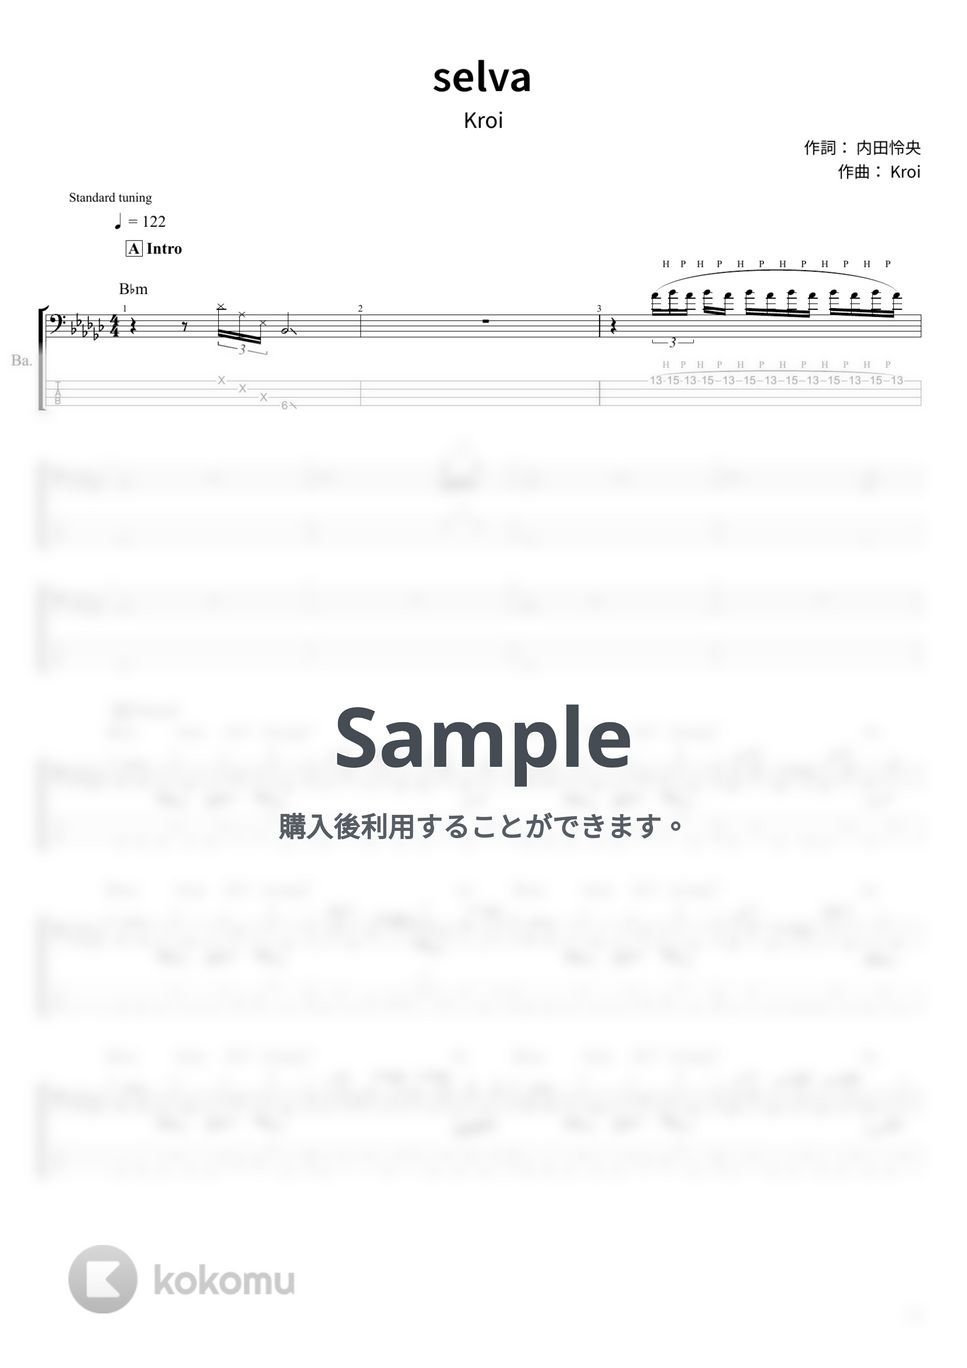 Kroi - selva (ベース Tab譜 4弦) by T's bass score